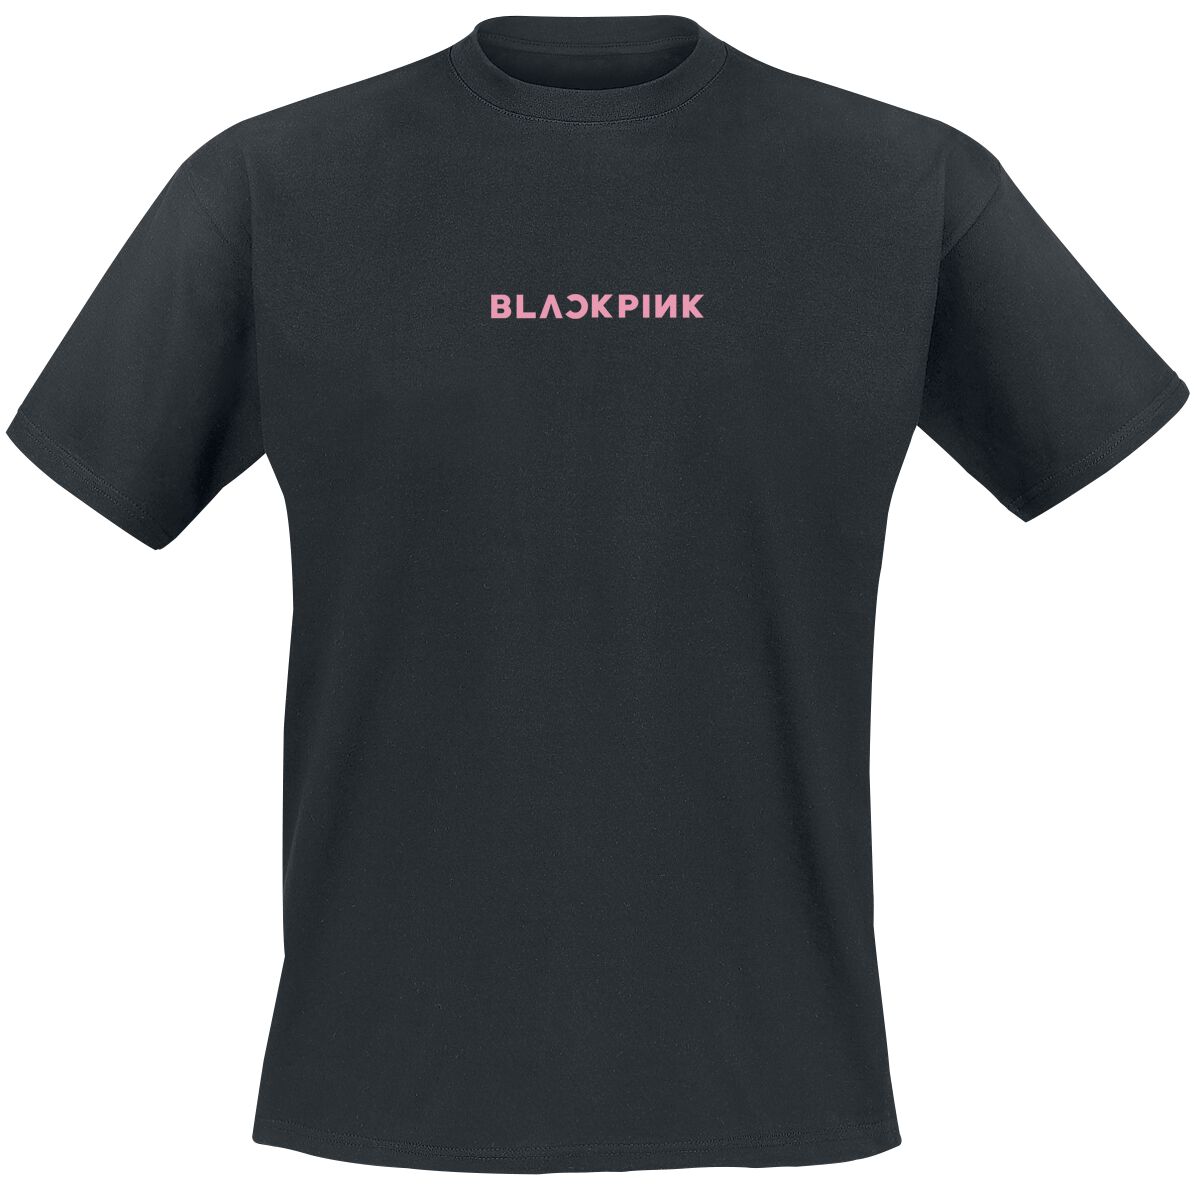 Blackpink T-Shirt - Taste That Pink Venom - L bis XL - für Männer - Größe L - schwarz  - Lizenziertes Merchandise!